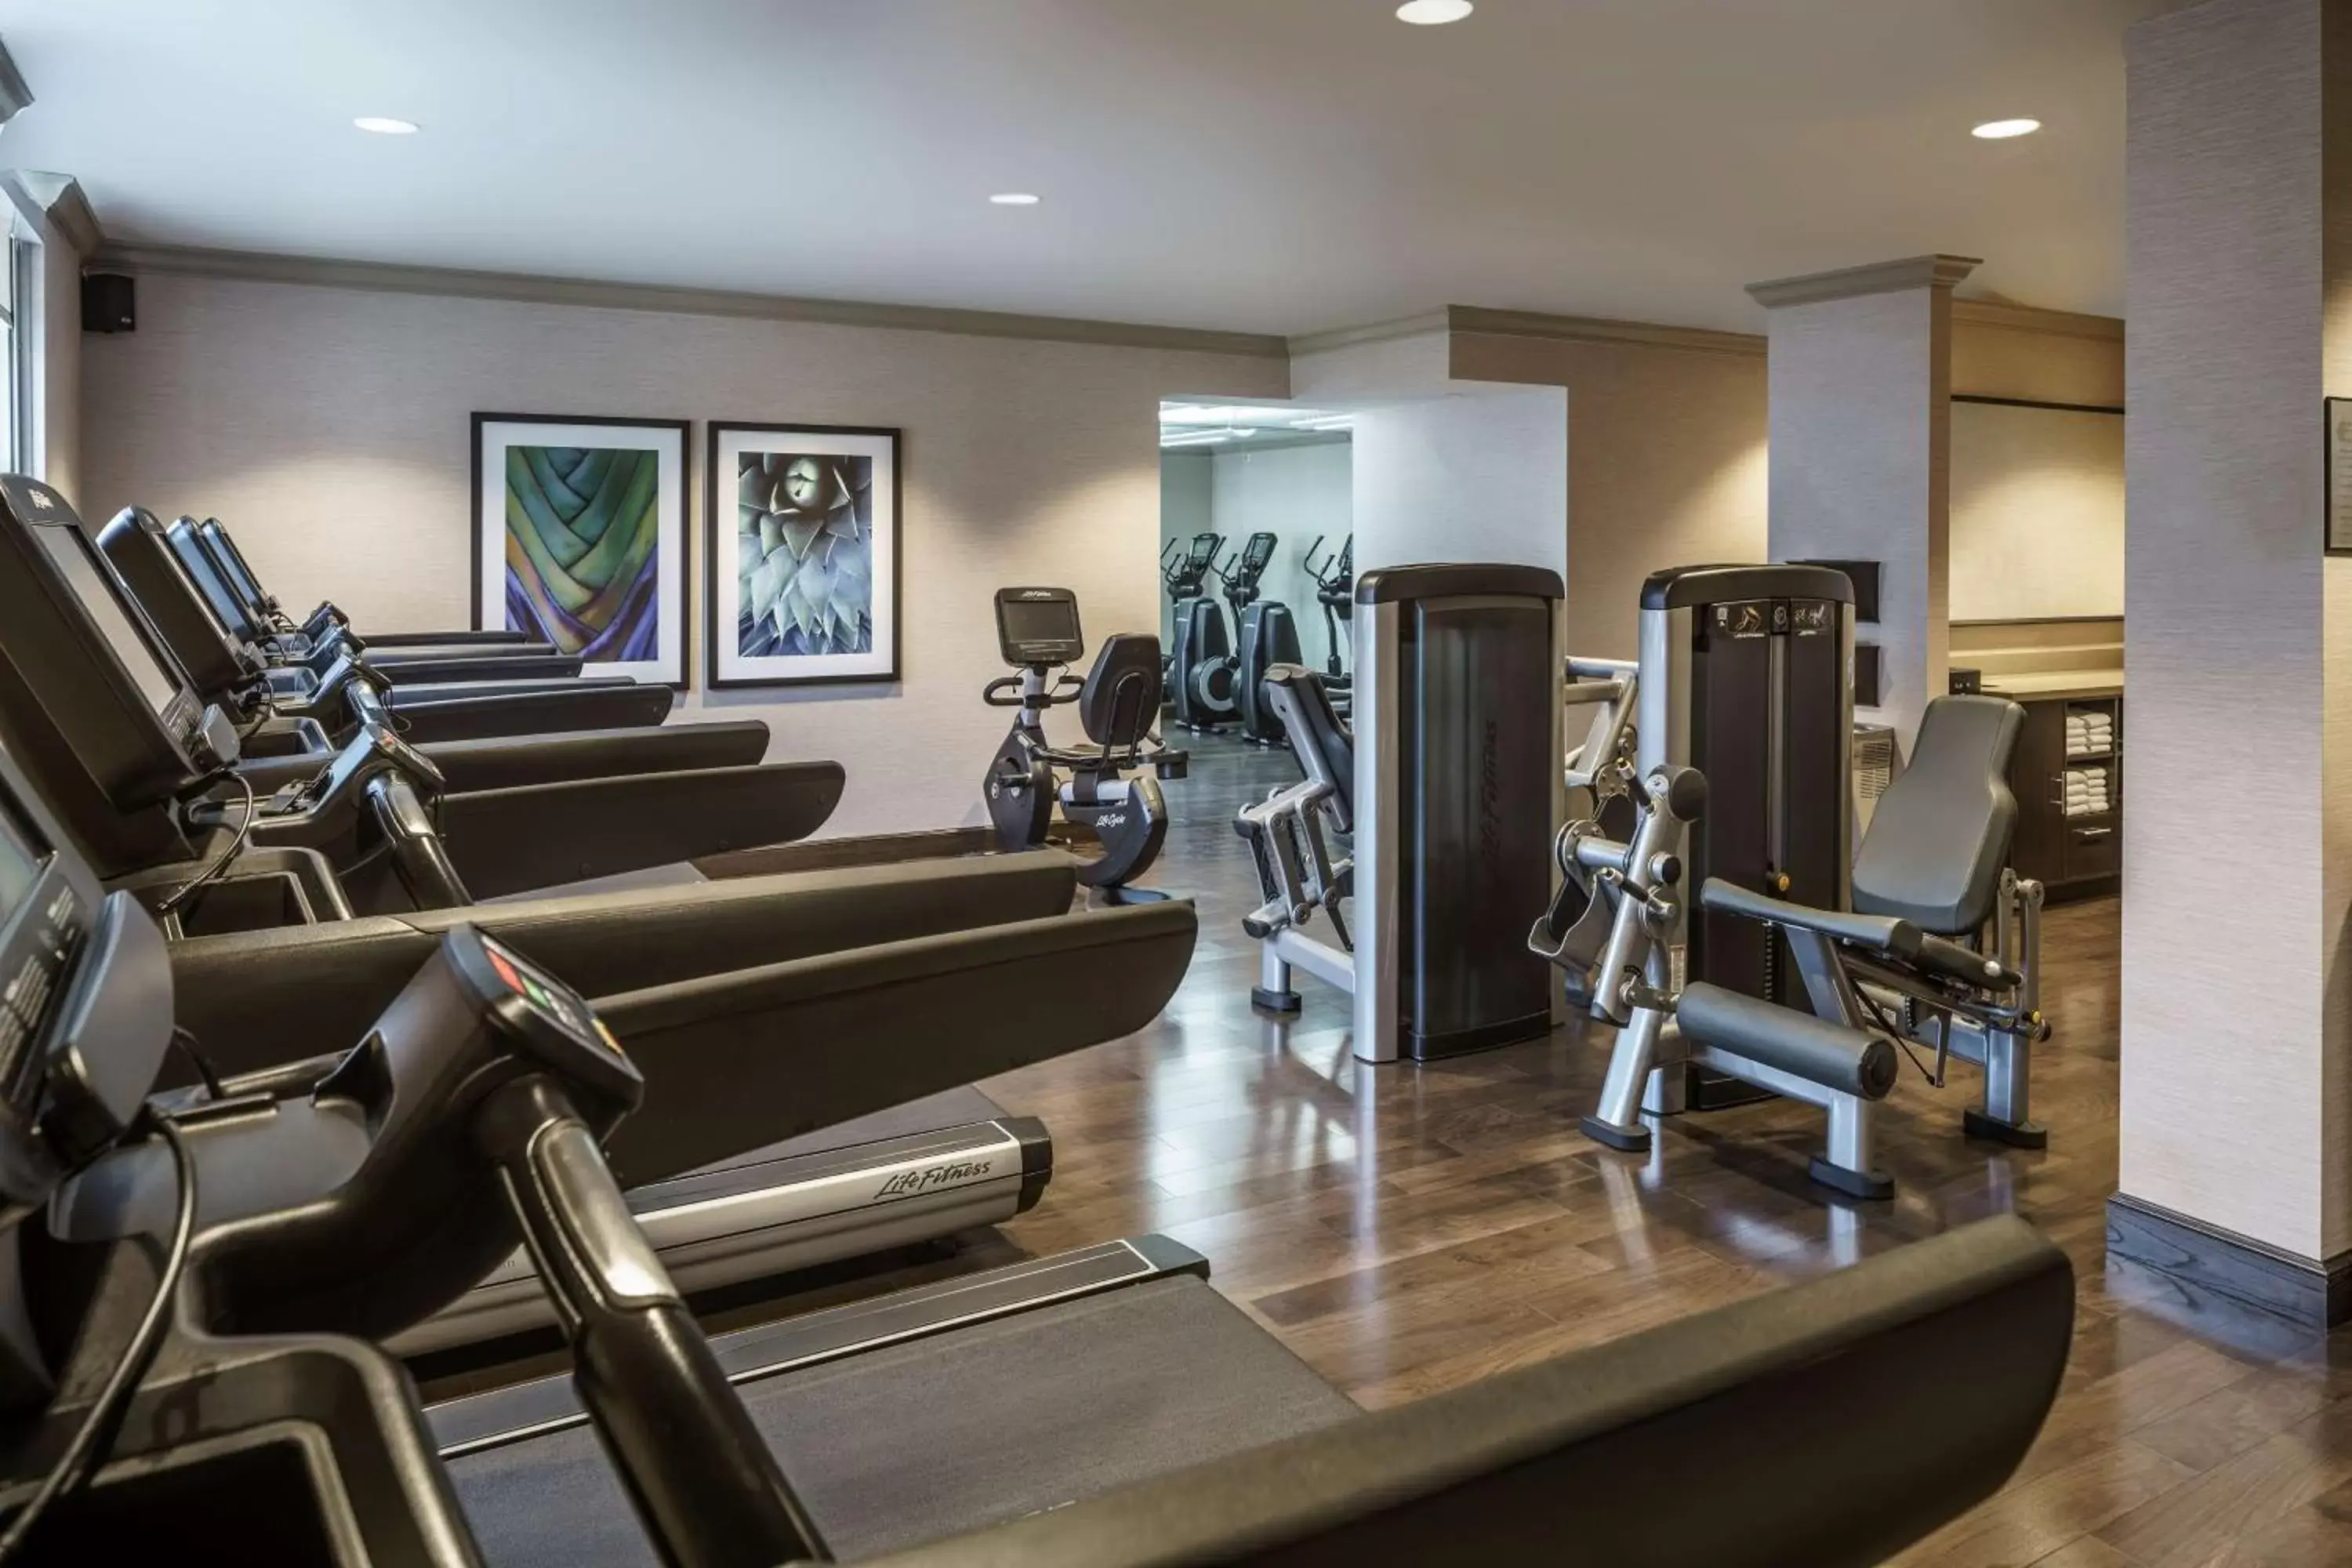 Fitness centre/facilities, Fitness Center/Facilities in Hyatt Regency Coral Gables in Miami